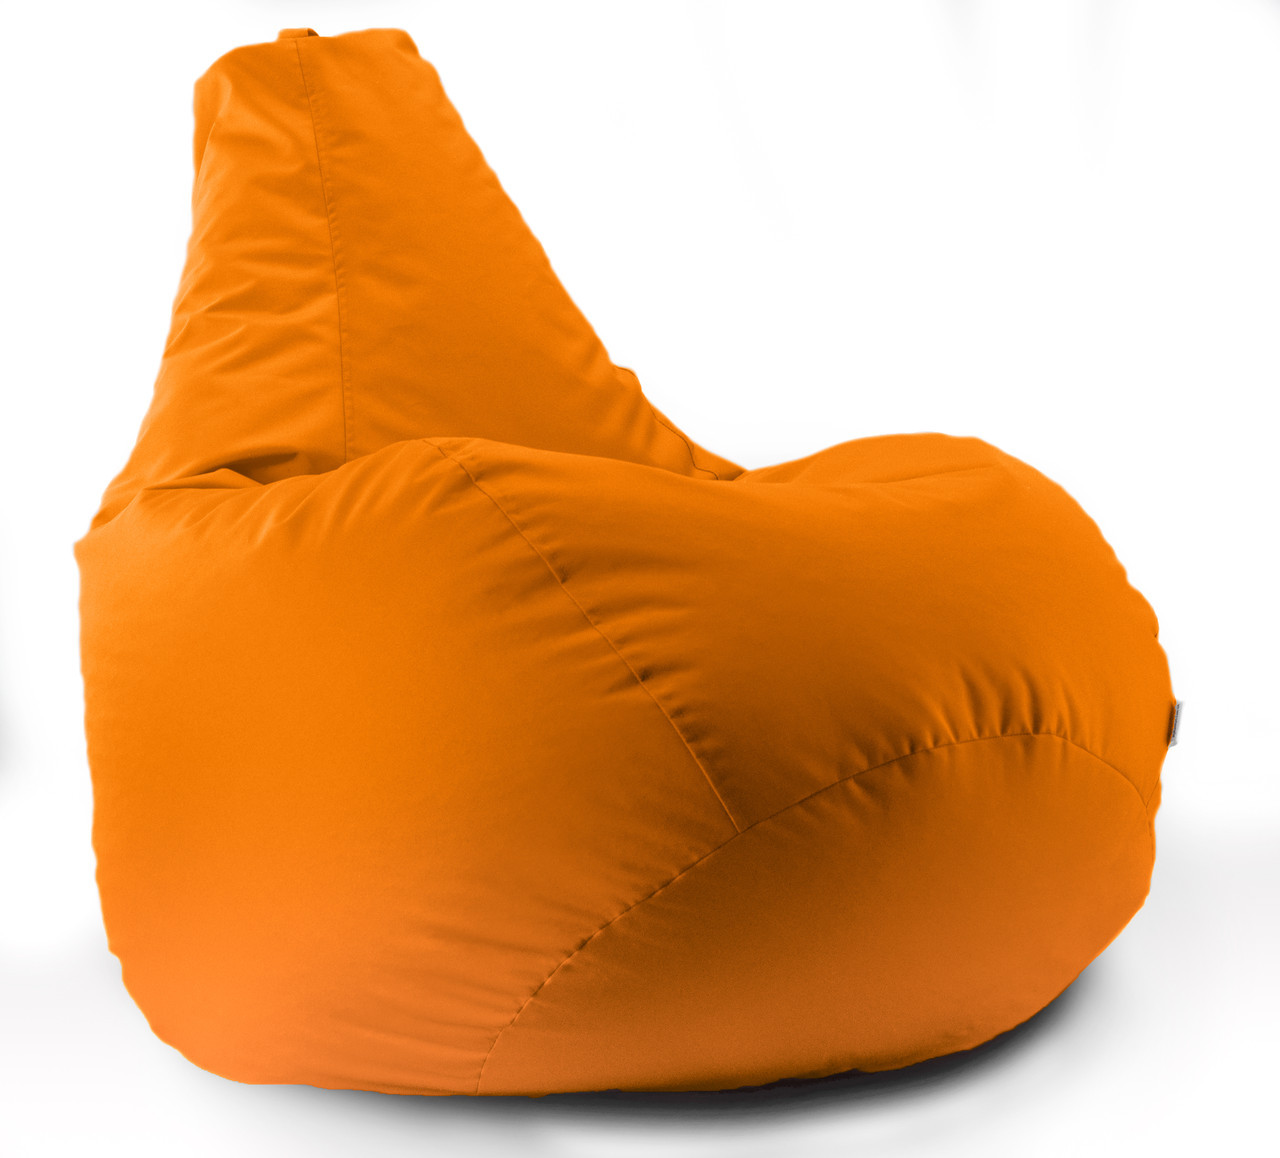 Кресло мешок груша Beans Bag Оксфорд Стронг 85*105 см Оранжевый (hub_vm1zep)